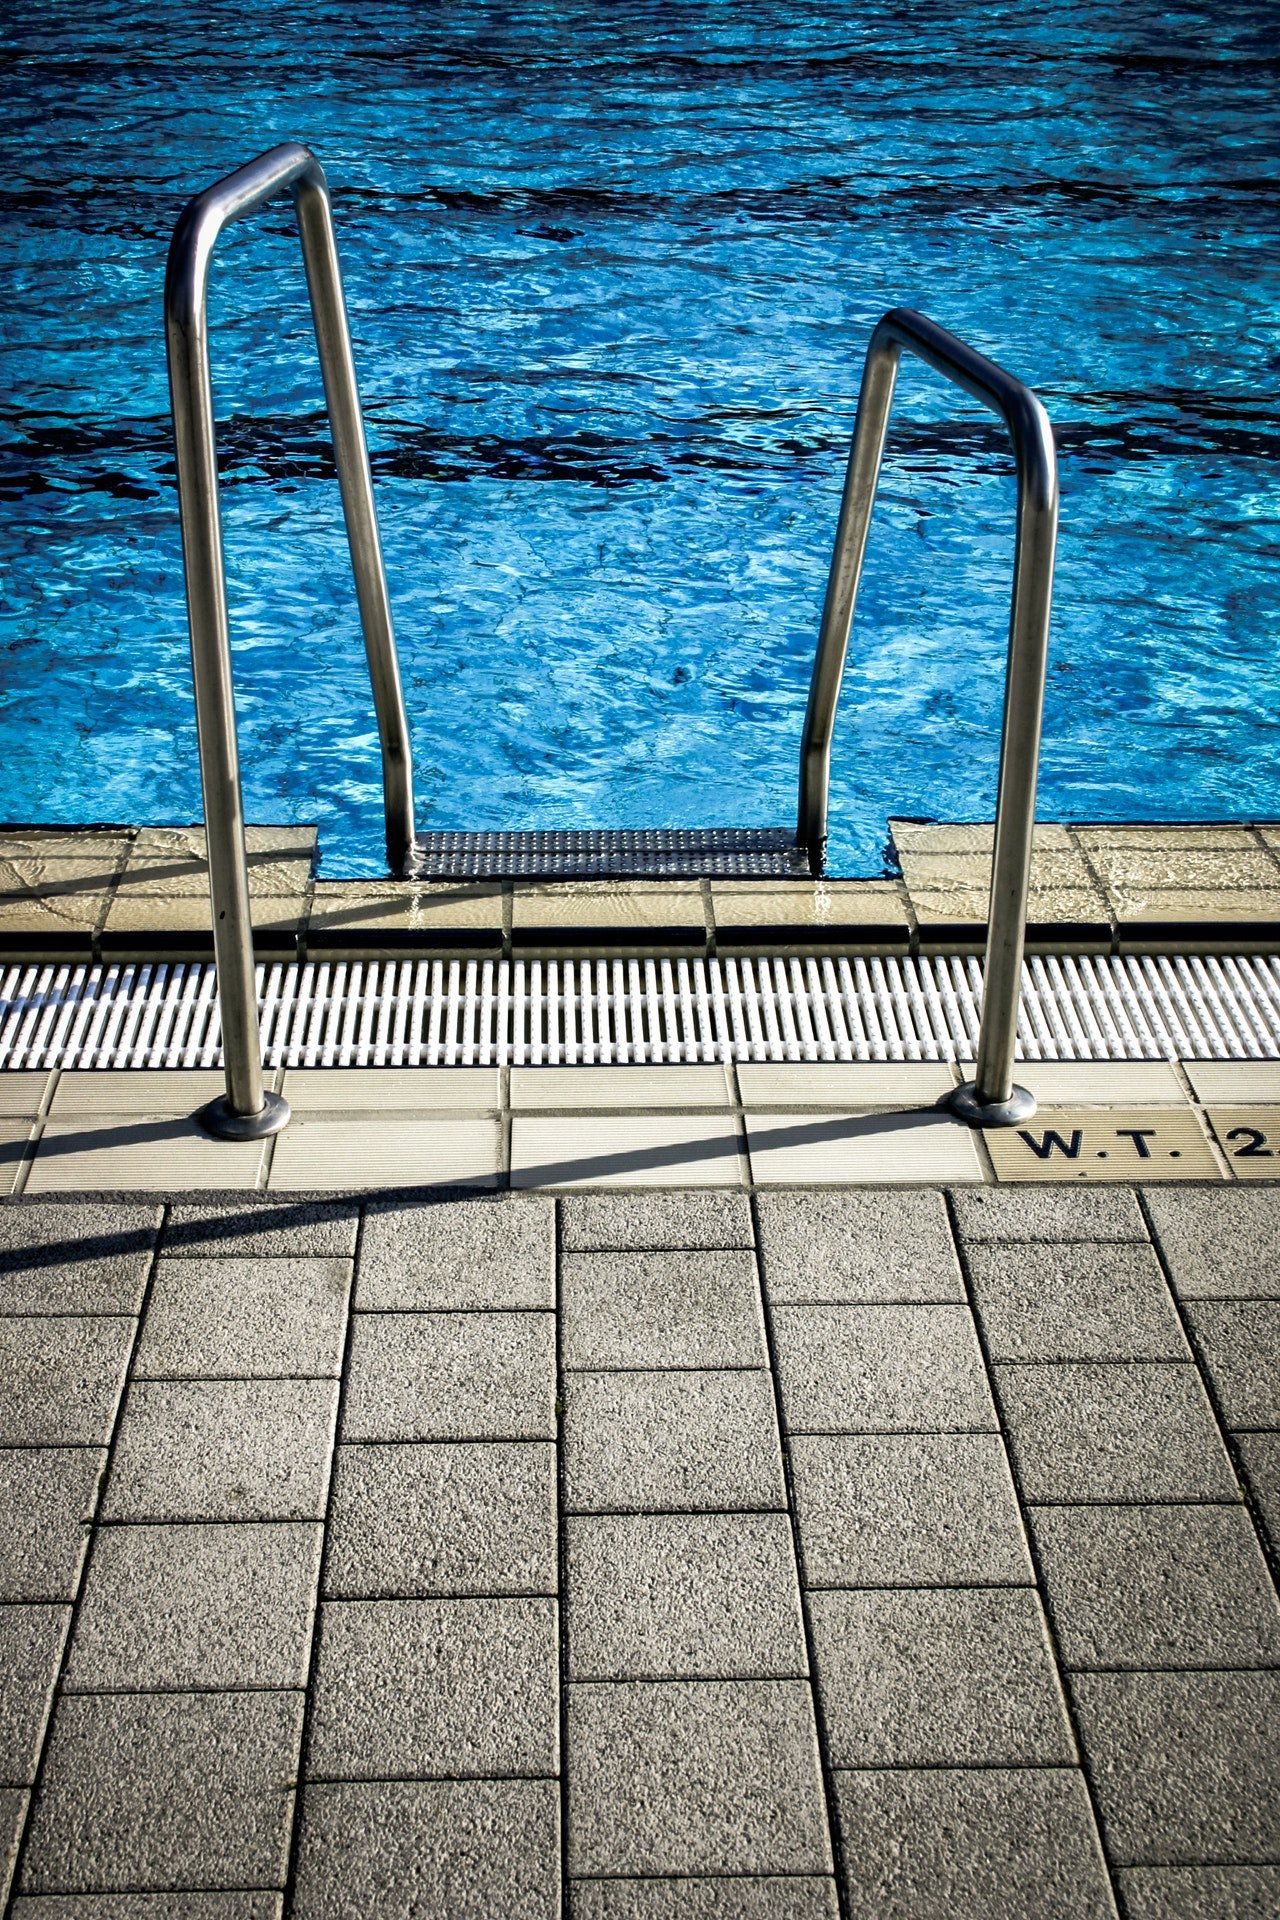 Foto eines Schwimmbades | Foto: Pexels